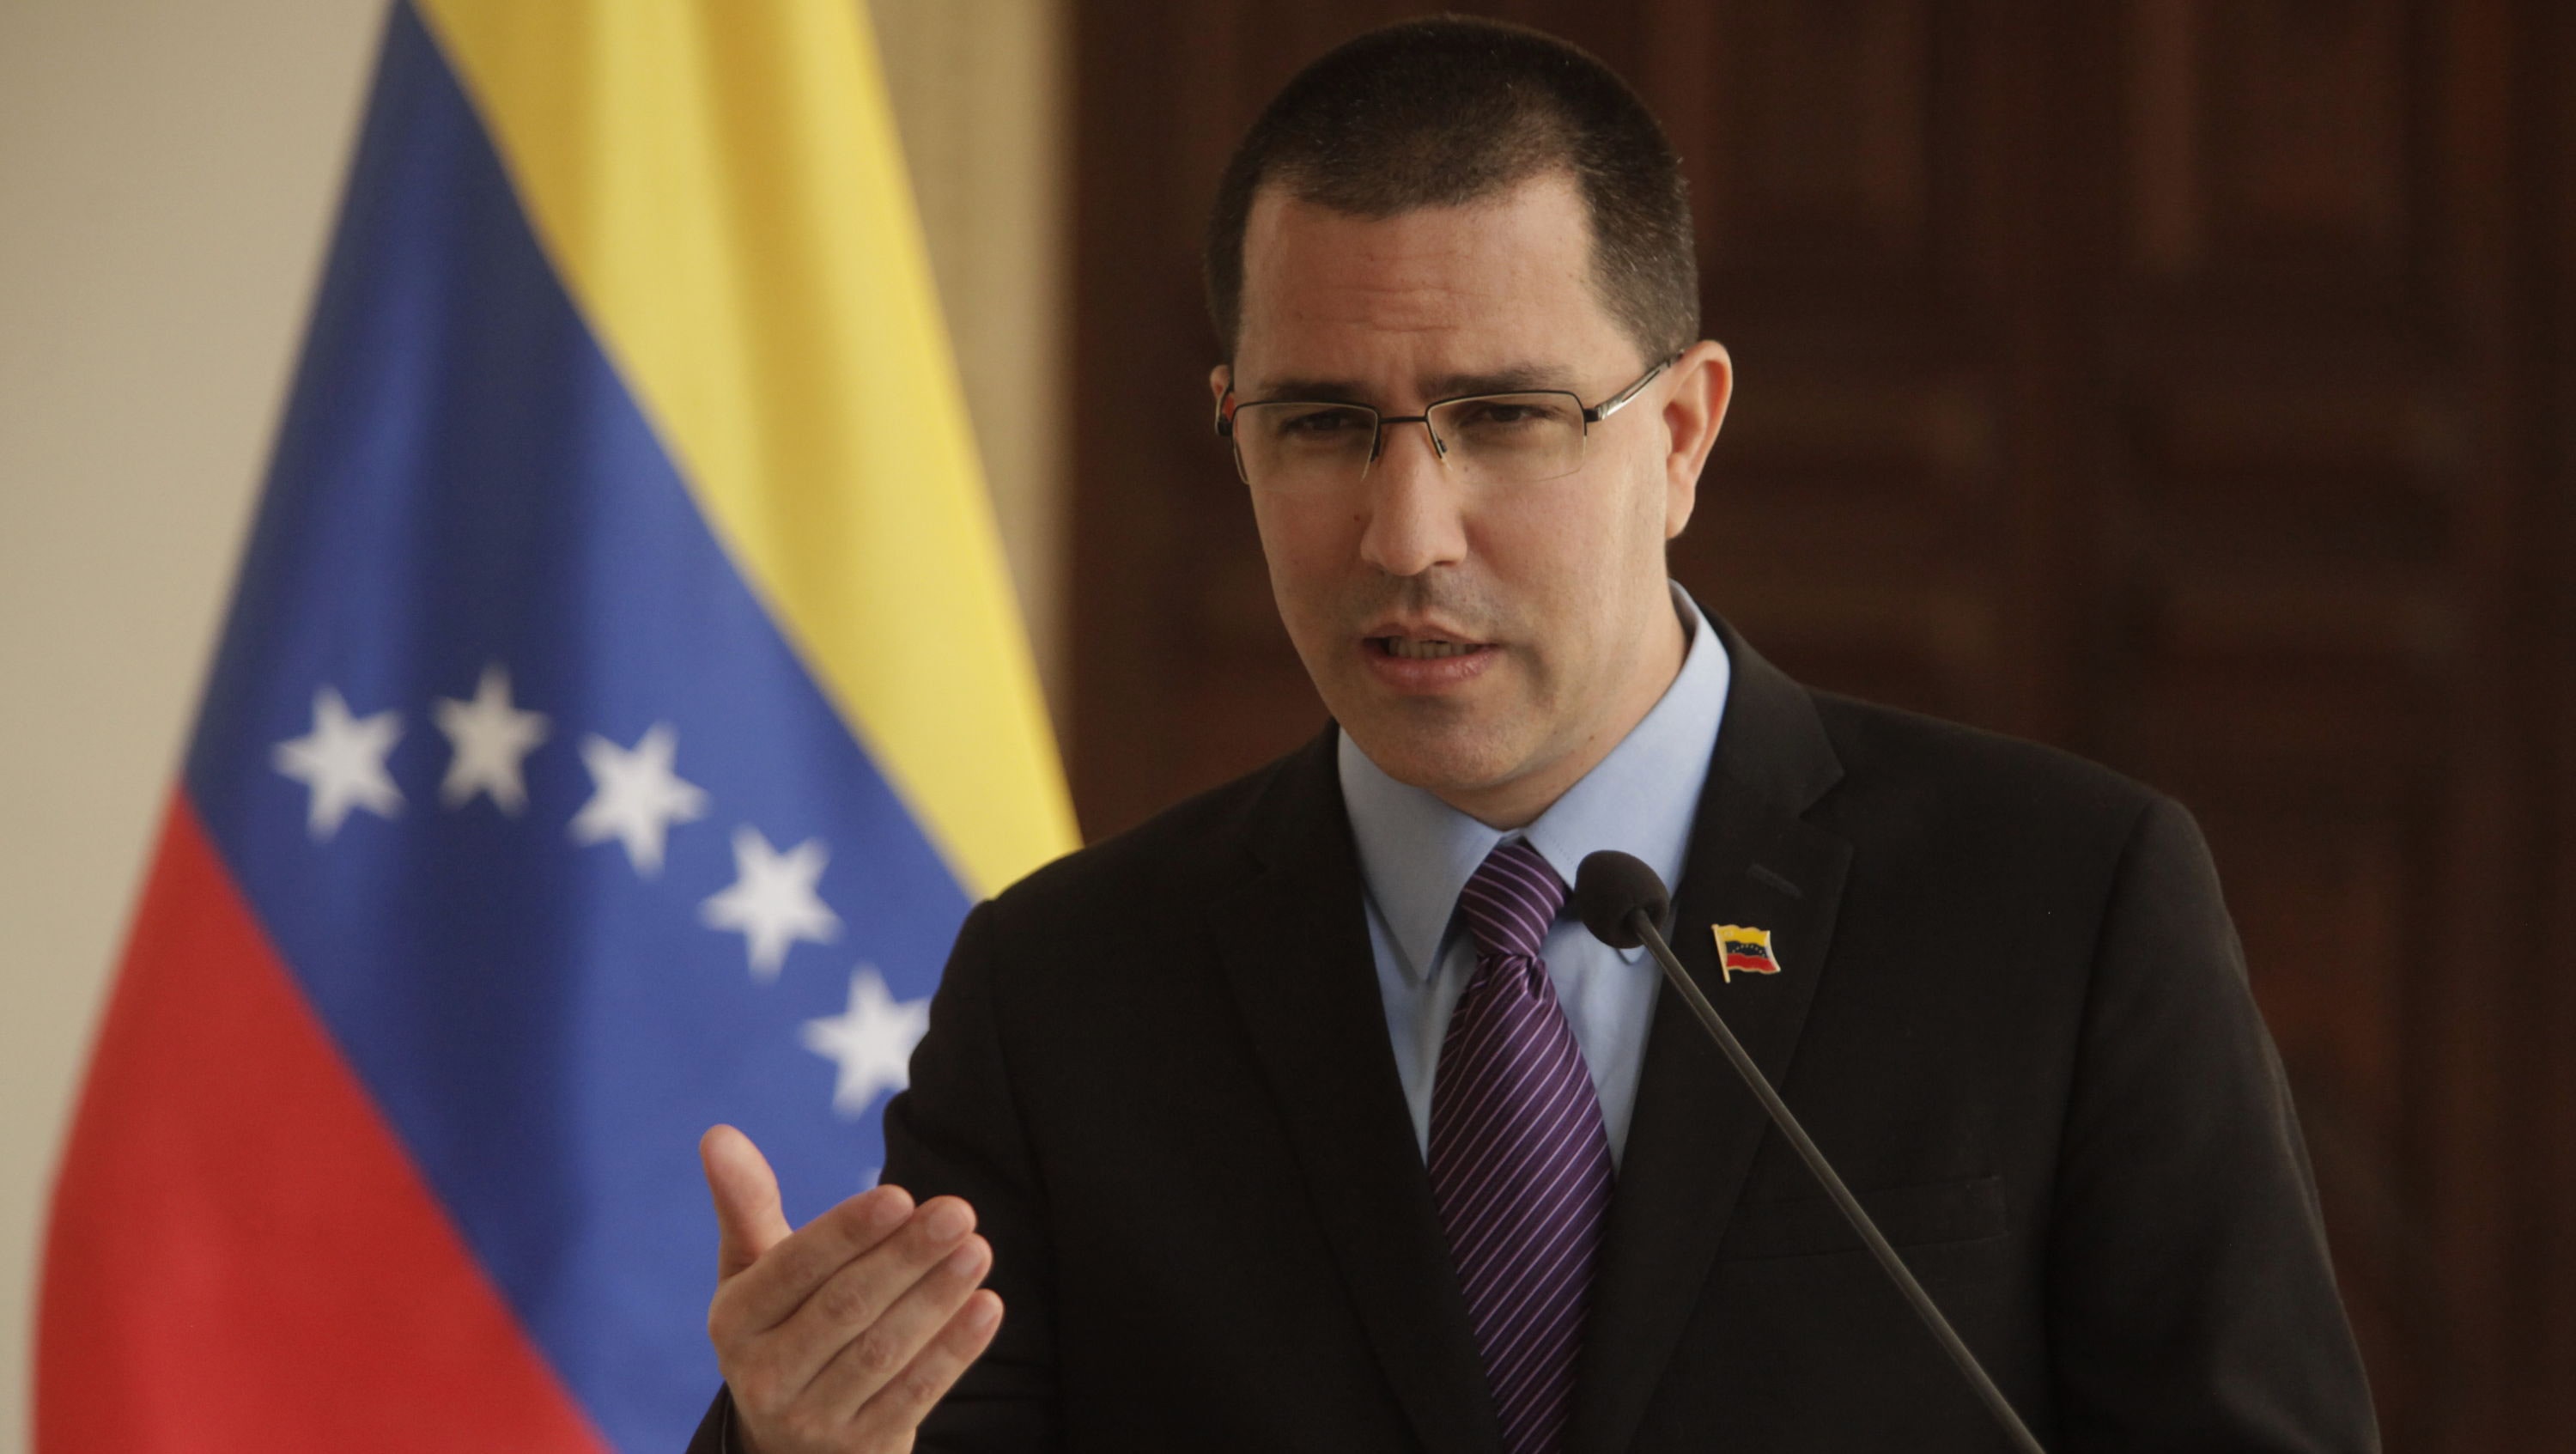 El Canciller venezolano señala que mientras el presidente Duque insiste en agradar a EE.UU., su popularidad continúa yéndose a pique en Colombia.